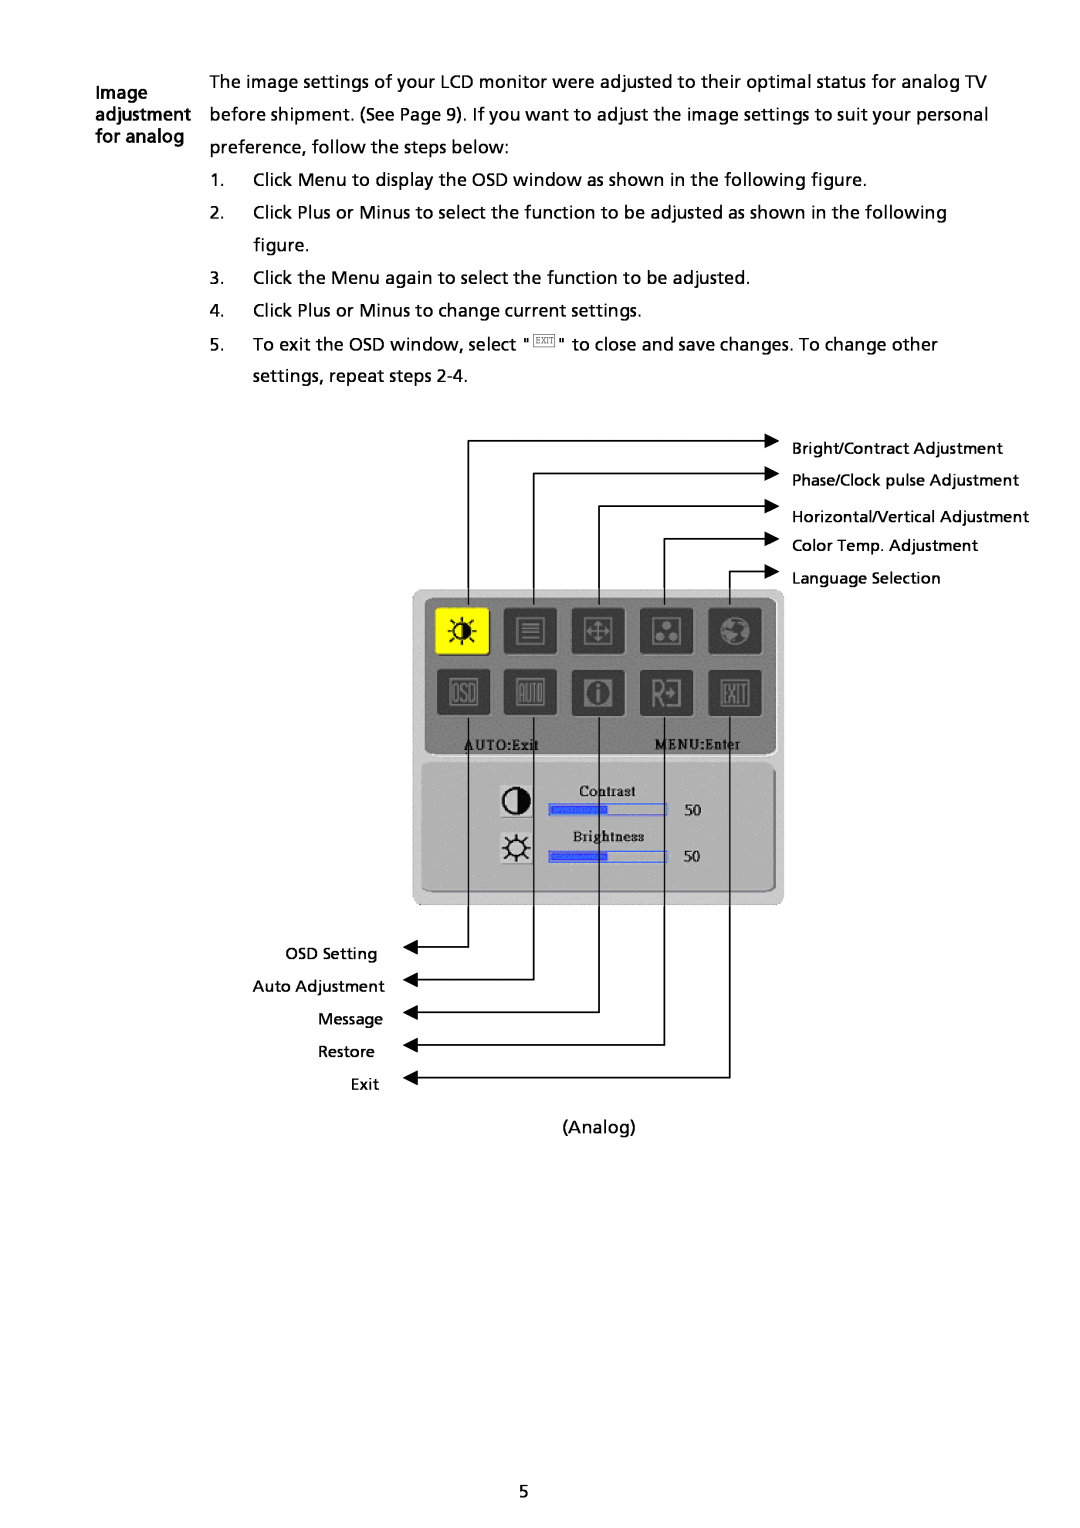 Acer AL2017 installation instructions Image adjustment for analog 